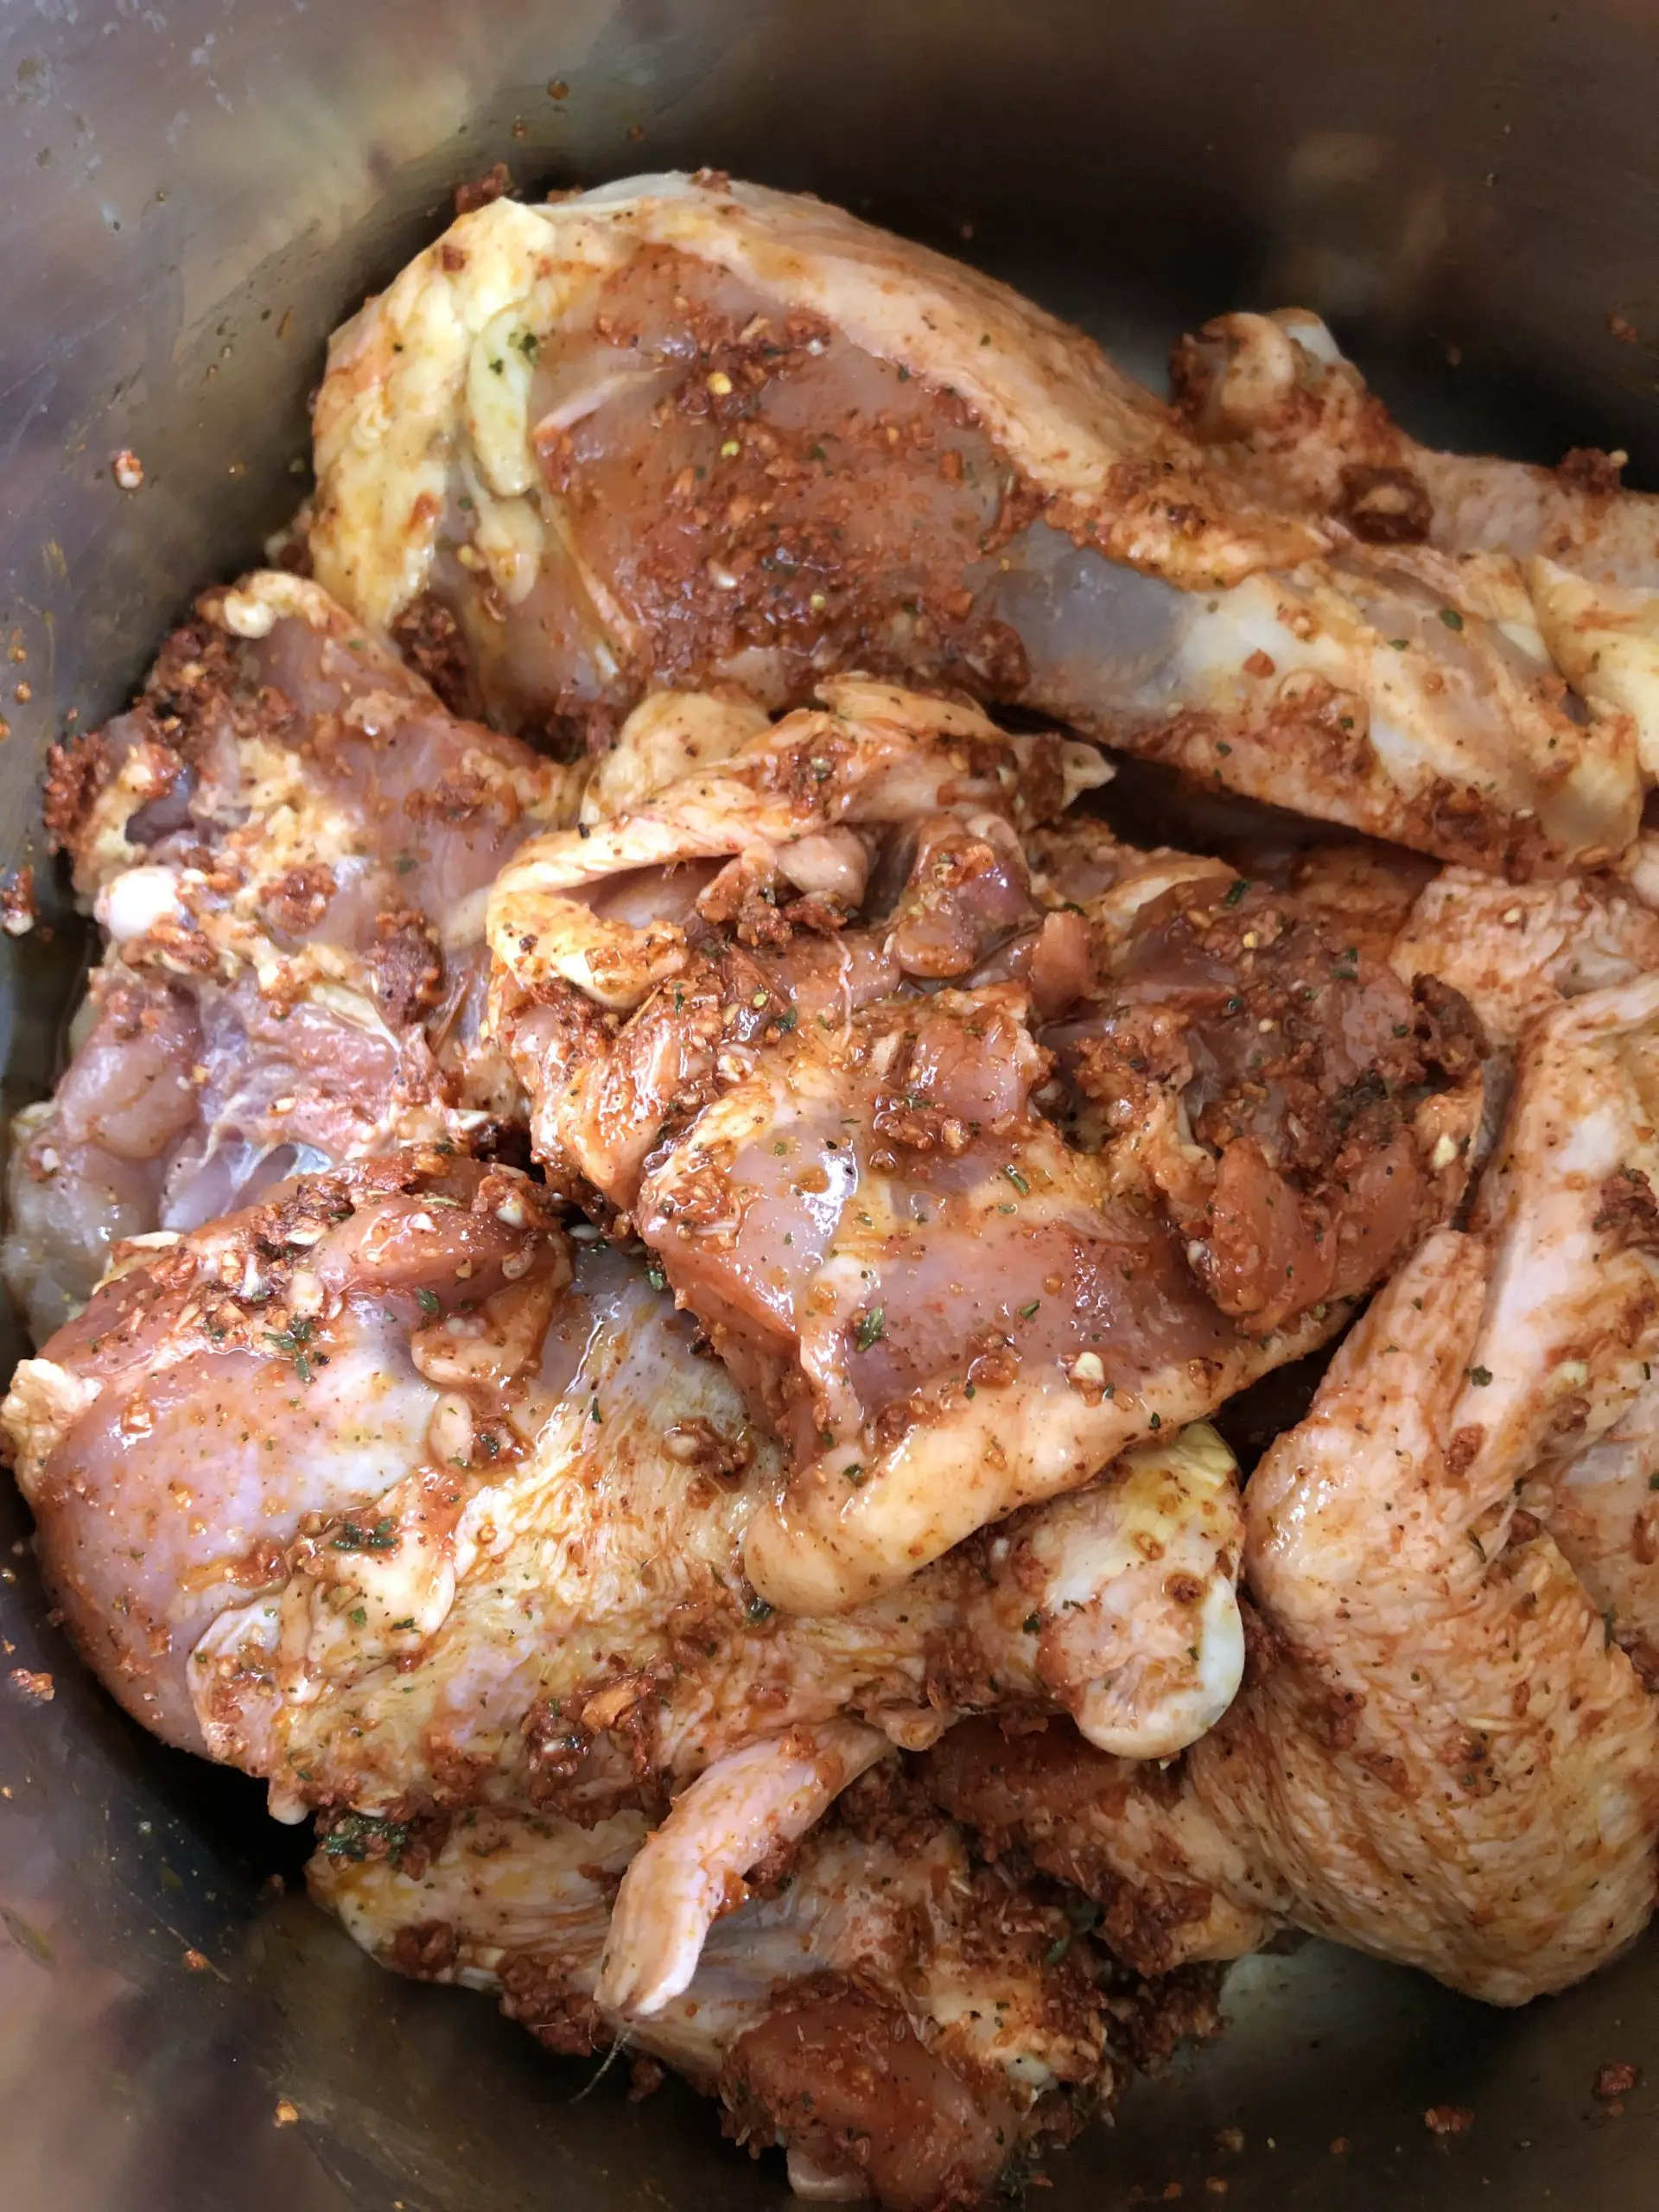 pieces of chicken in a marinade